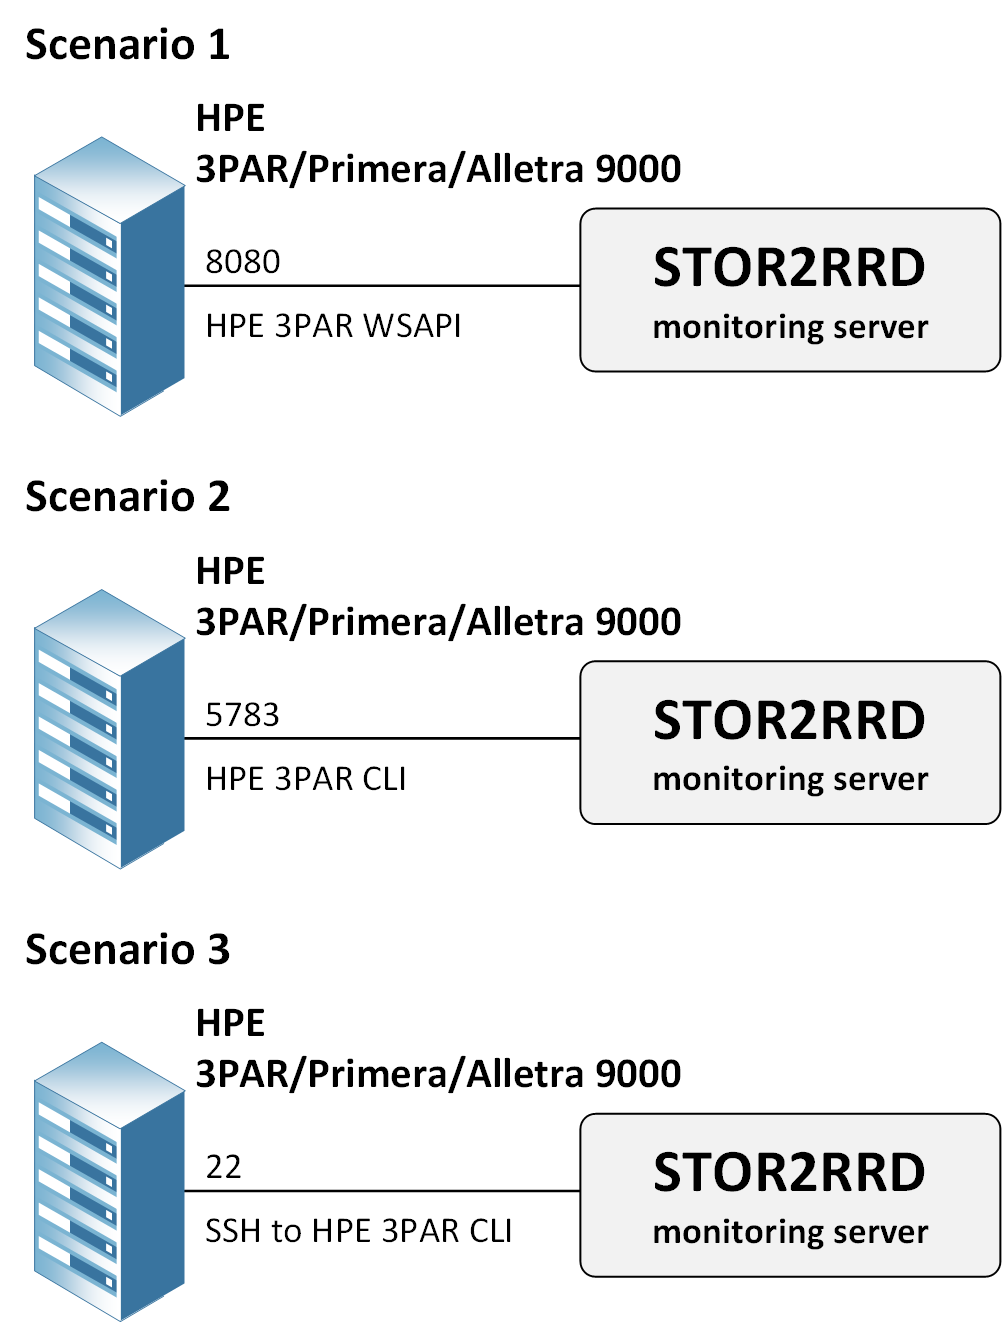 3PAR monitoring scenarios